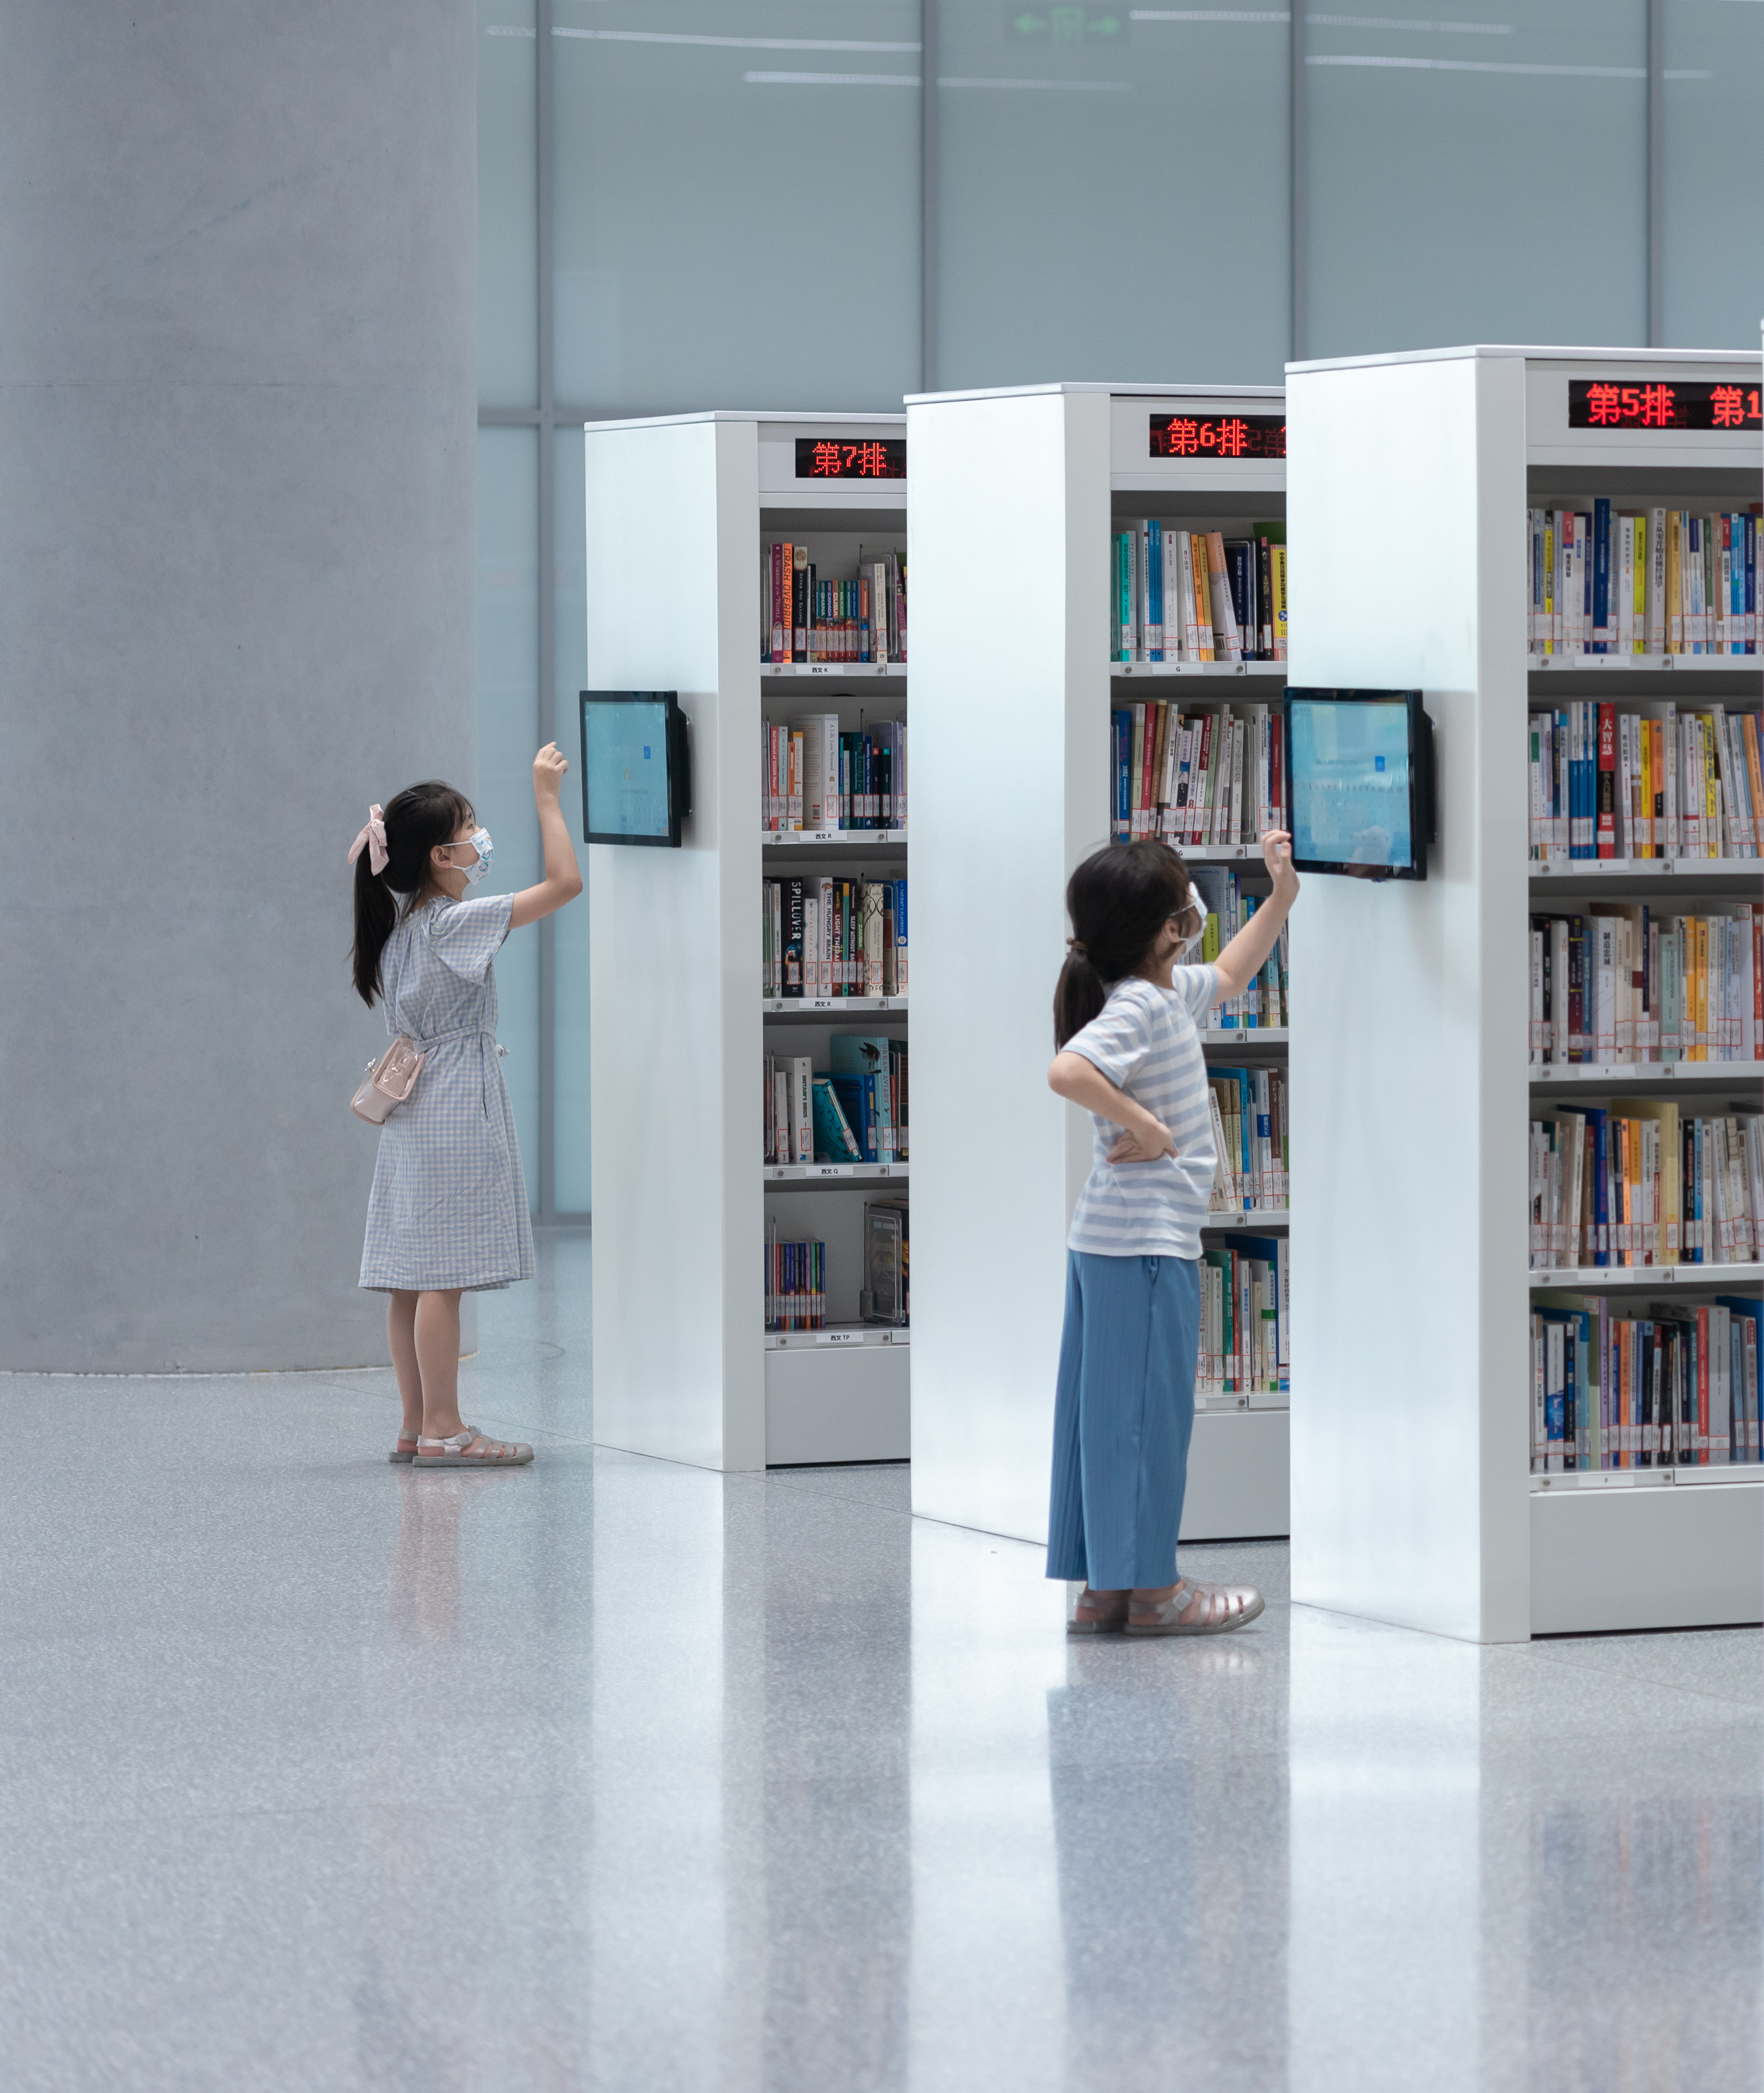 上图东馆的智能书架，在公测期间吸引了许多小朋友的目光。.jpg